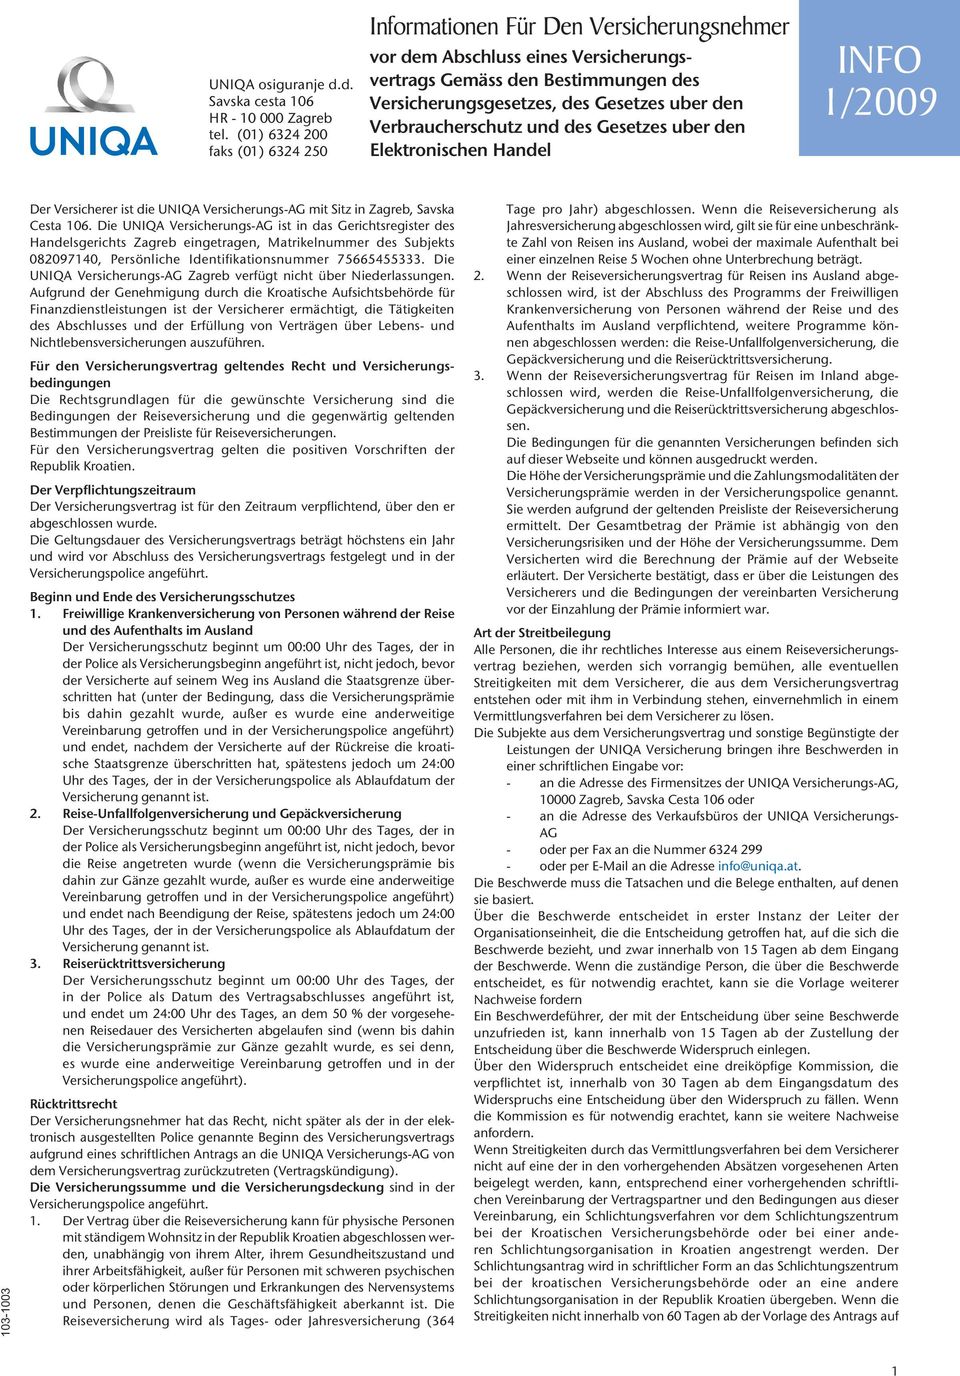 Verbraucherschutz und des Gesetzes uber den Elektronischen Handel INFO 1/2009 103-1003 Der Versicherer ist die UNIQA Versicherungs-AG mit Sitz in Zagreb, Savska Cesta 106.